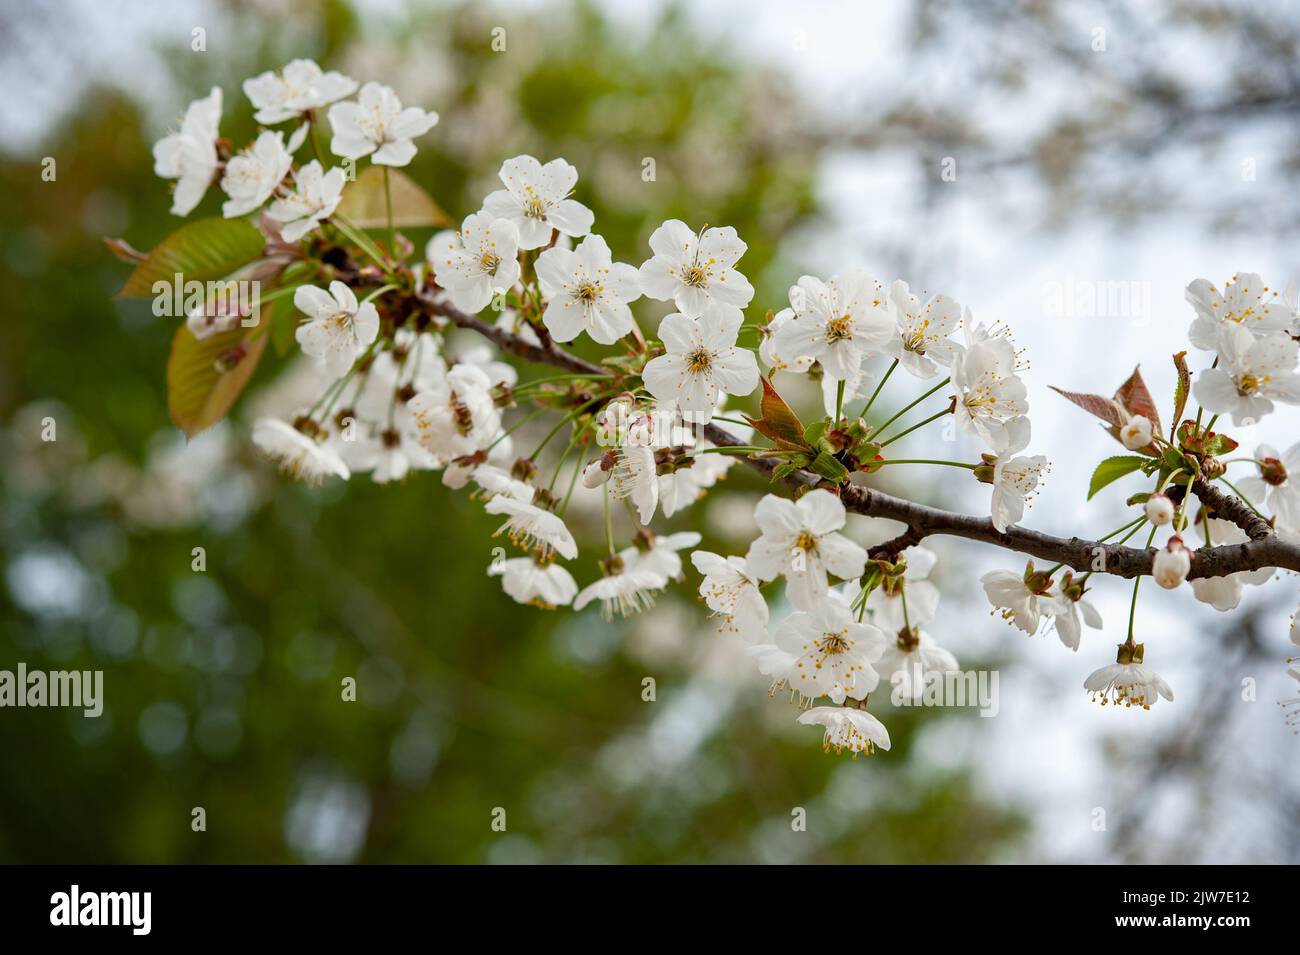 Prunus avium, gemeinhin als Wildkirsche, Süßkirsche, gean oder Vogelkirsche bezeichnet, ist eine Kirschart, eine Pflanze aus der Familie der Rosengewächse, Rosaceae. . Stockfoto